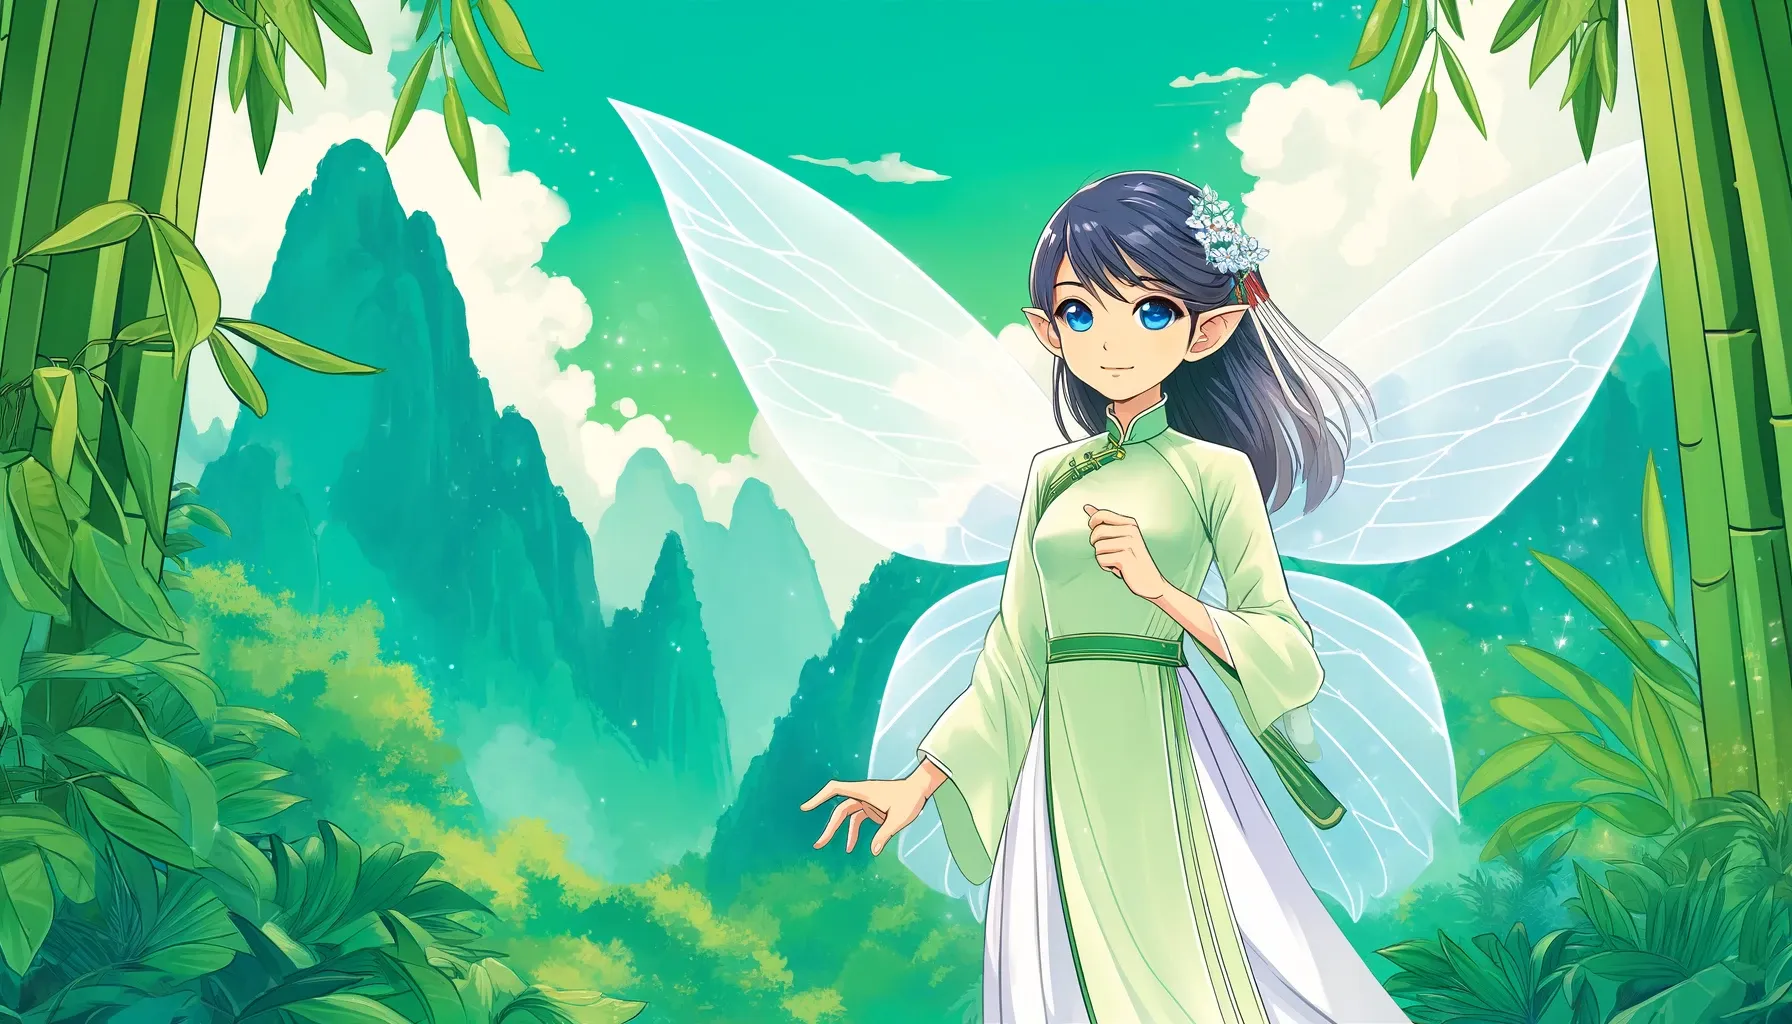 Ilustración estilo anime de Âu Cơ, un hada con atuendo tradicional vietnamita, alas delicadas y expresión serena, rodeada de un paisaje montañoso exuberante en tonos verdes.